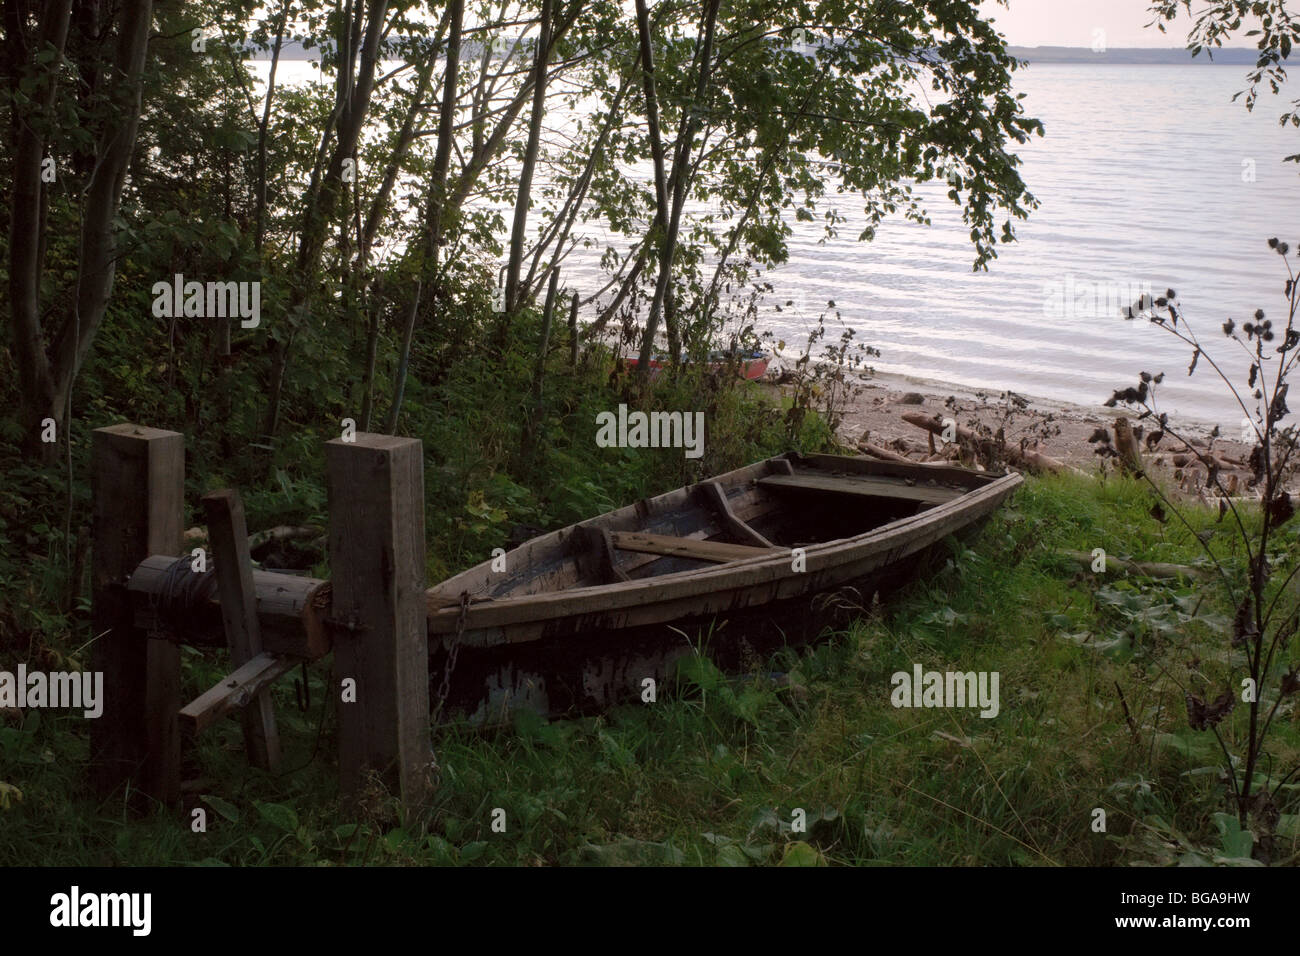 Vieux bateaux sur la rive de la rivière Kama, Perm, Russie Banque D'Images